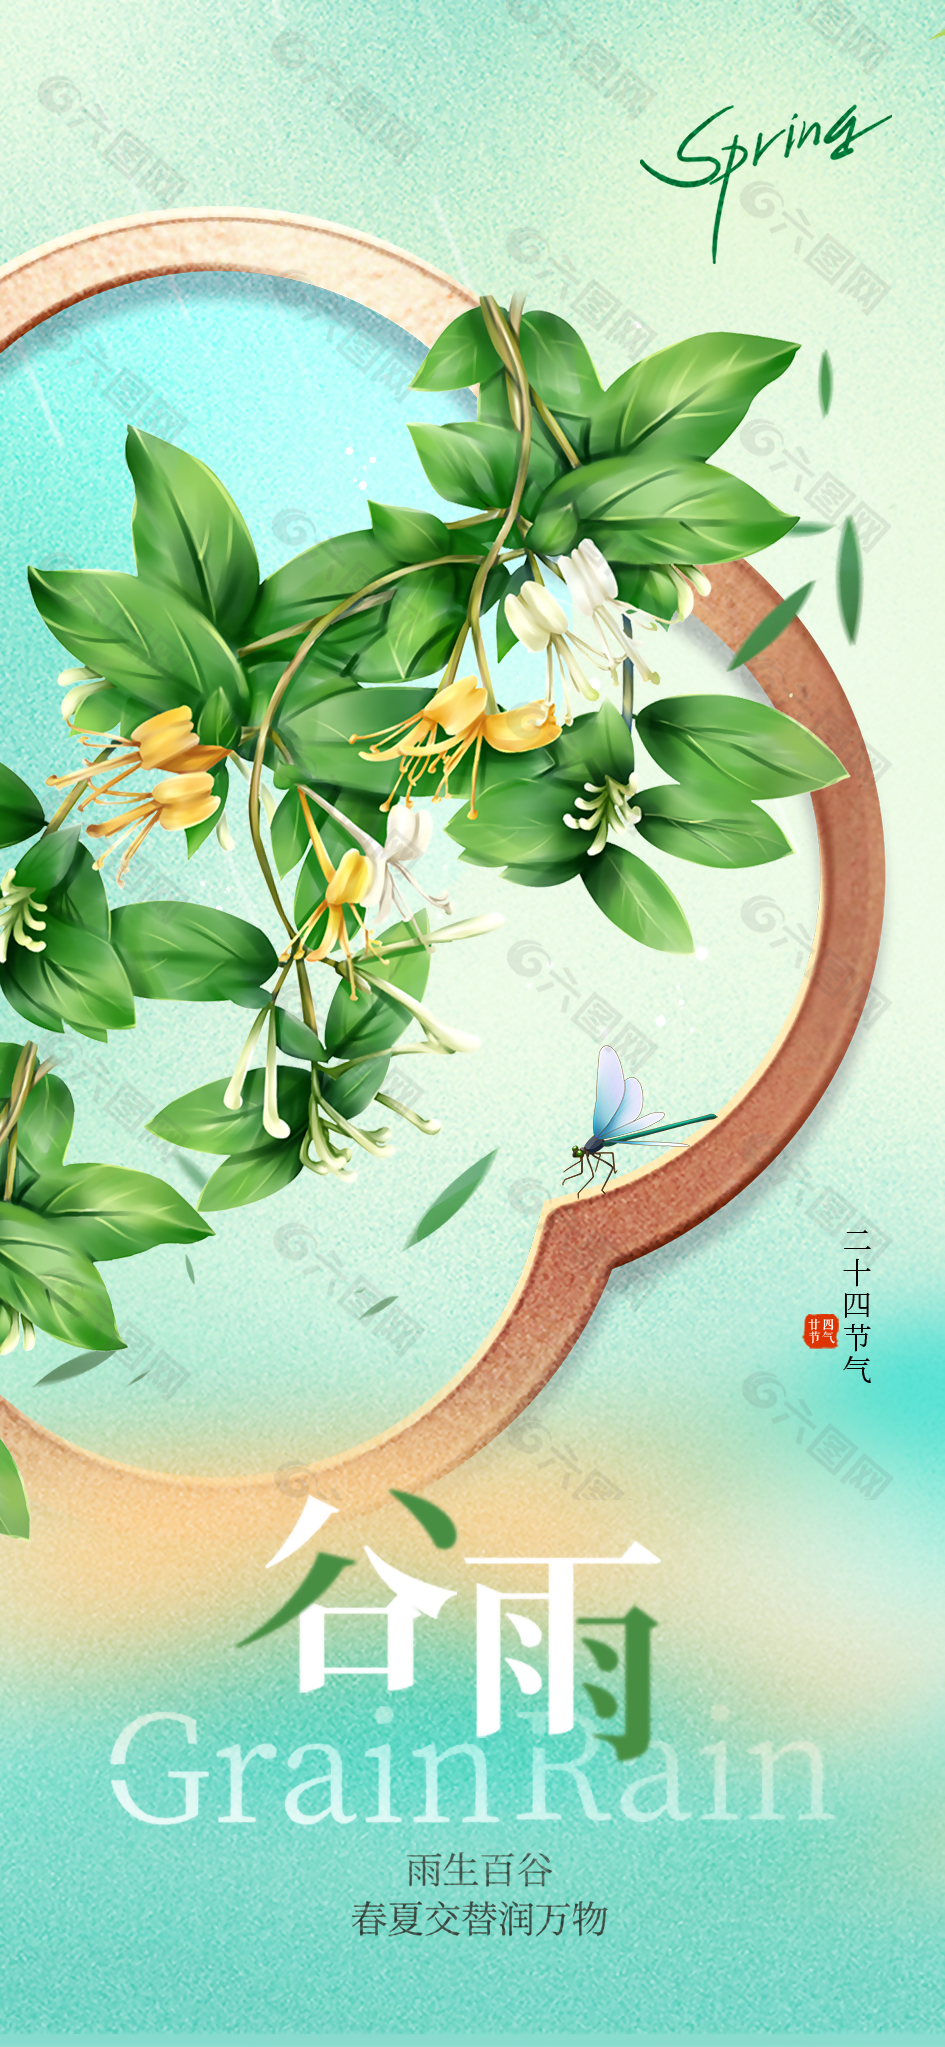 雨生百谷创意手绘树叶花朵海报素材